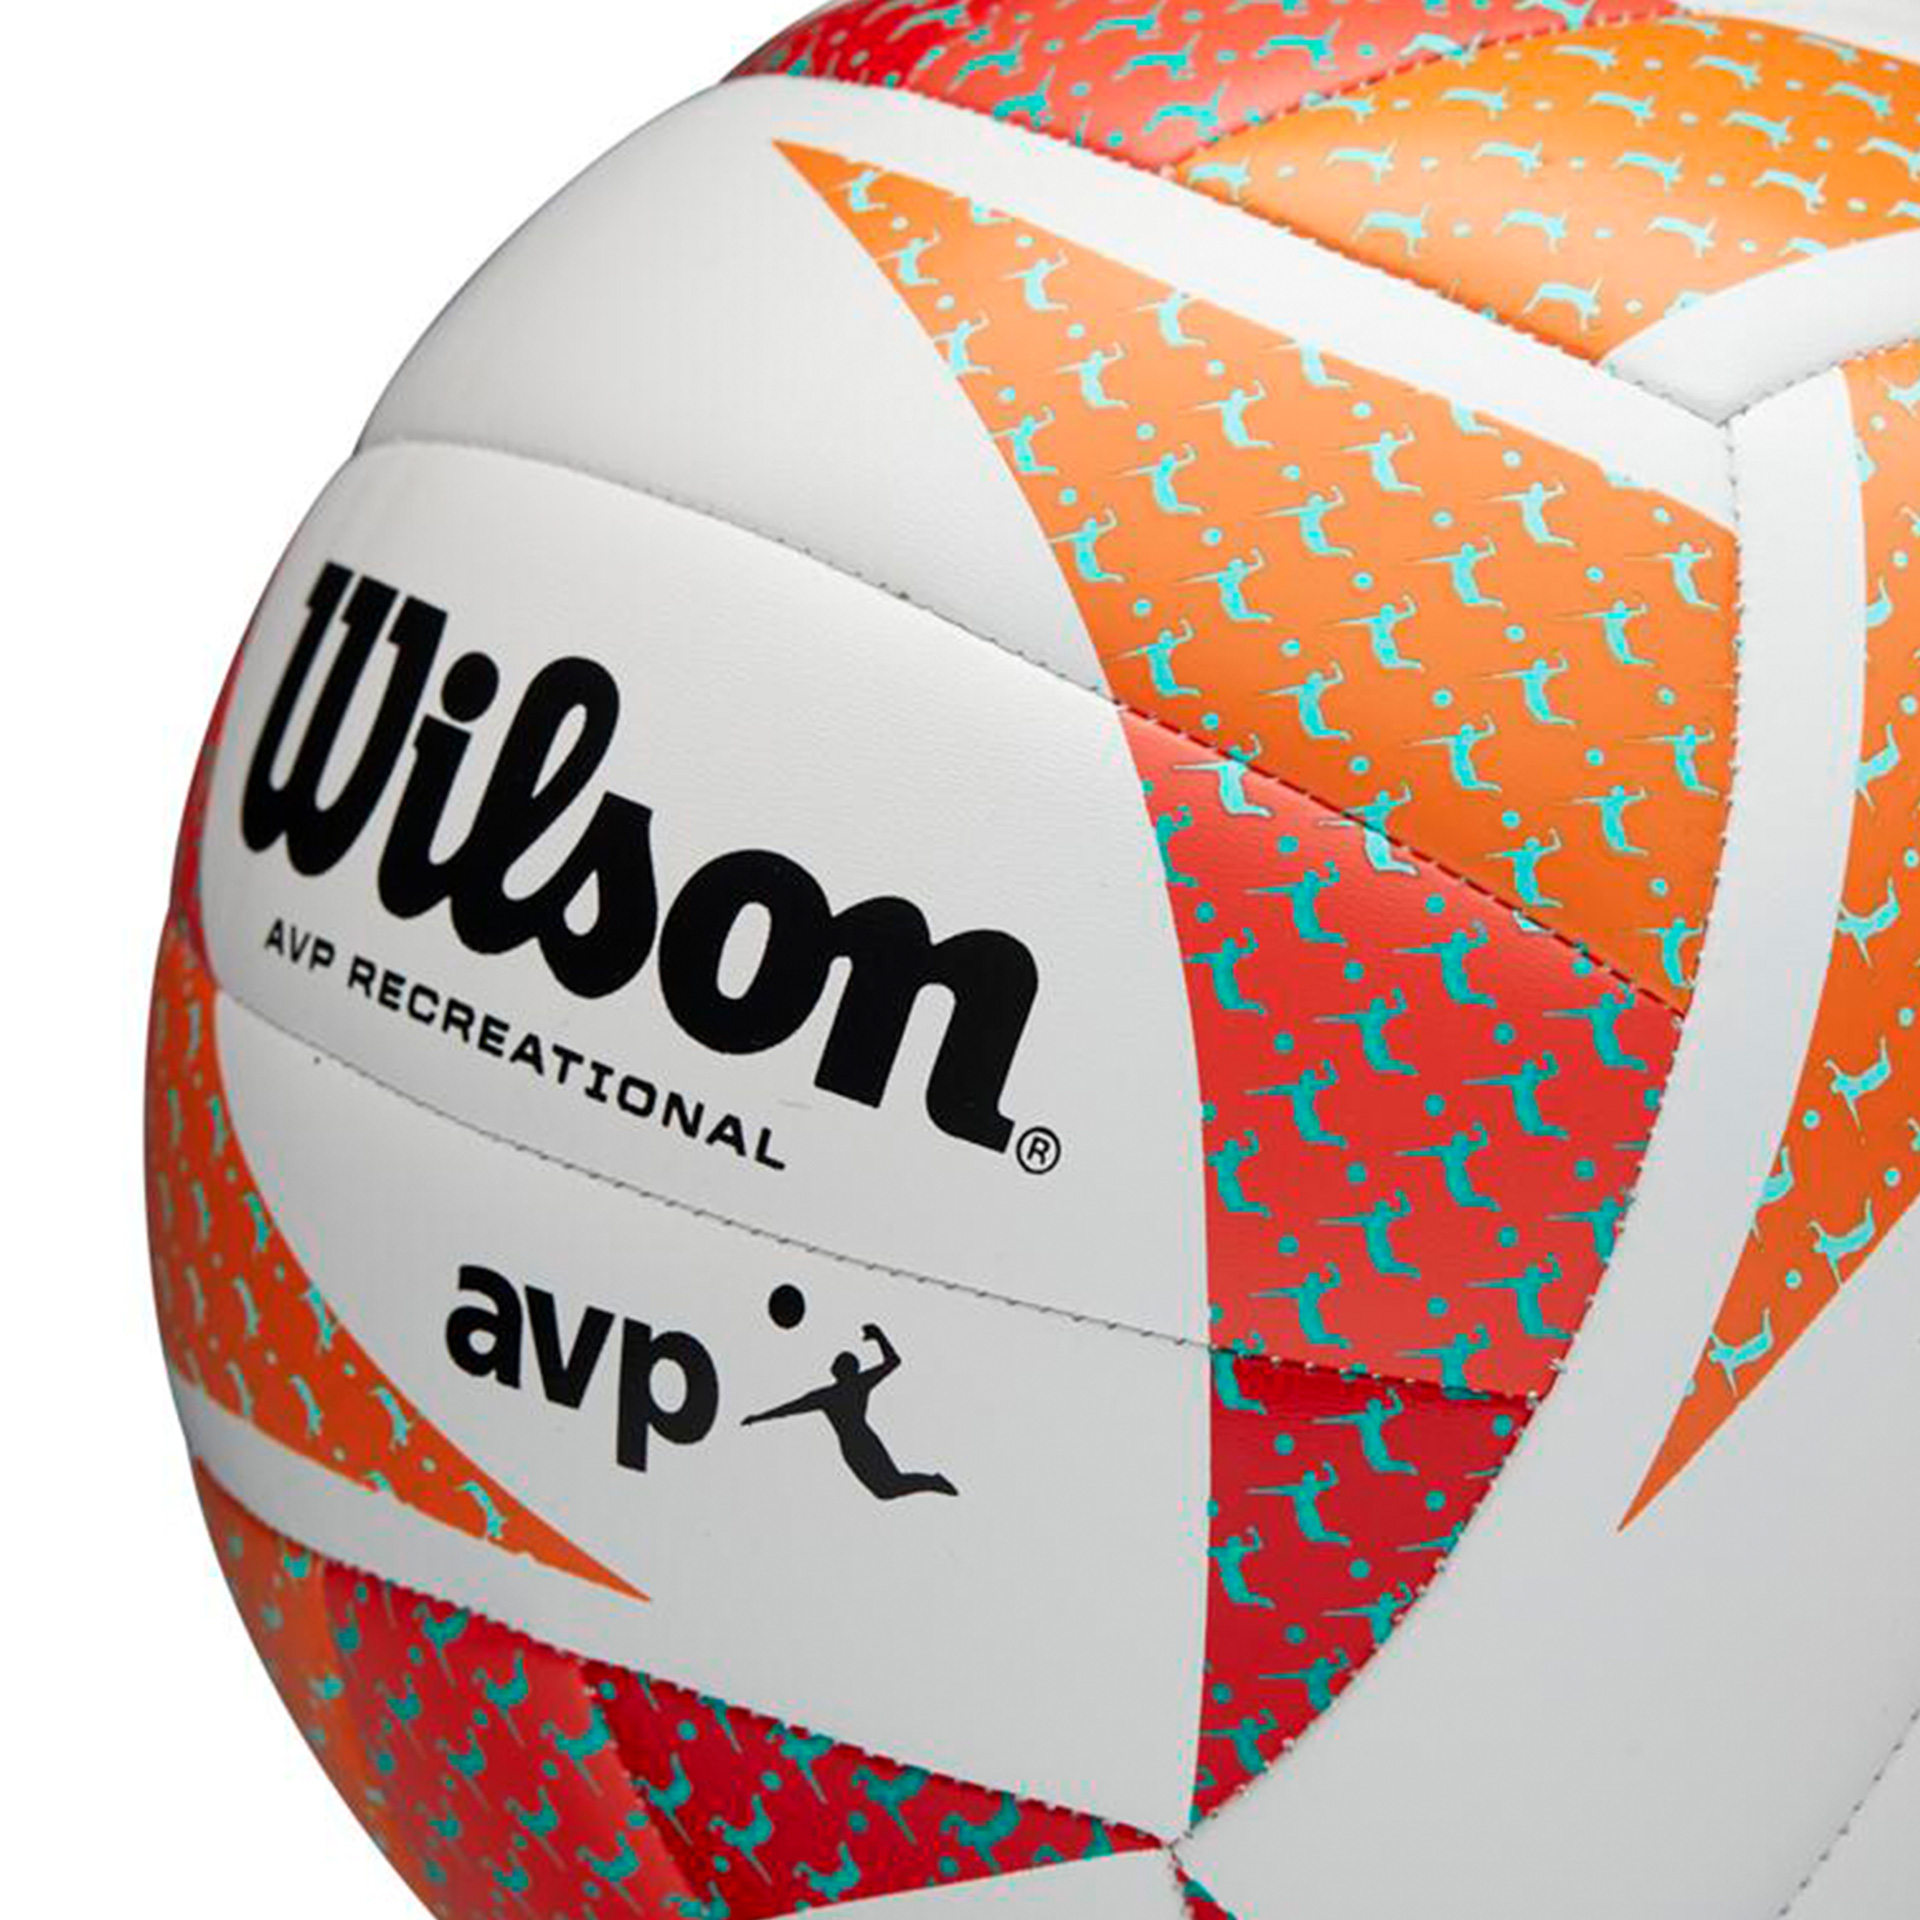 Balon voleibol wilson avp style